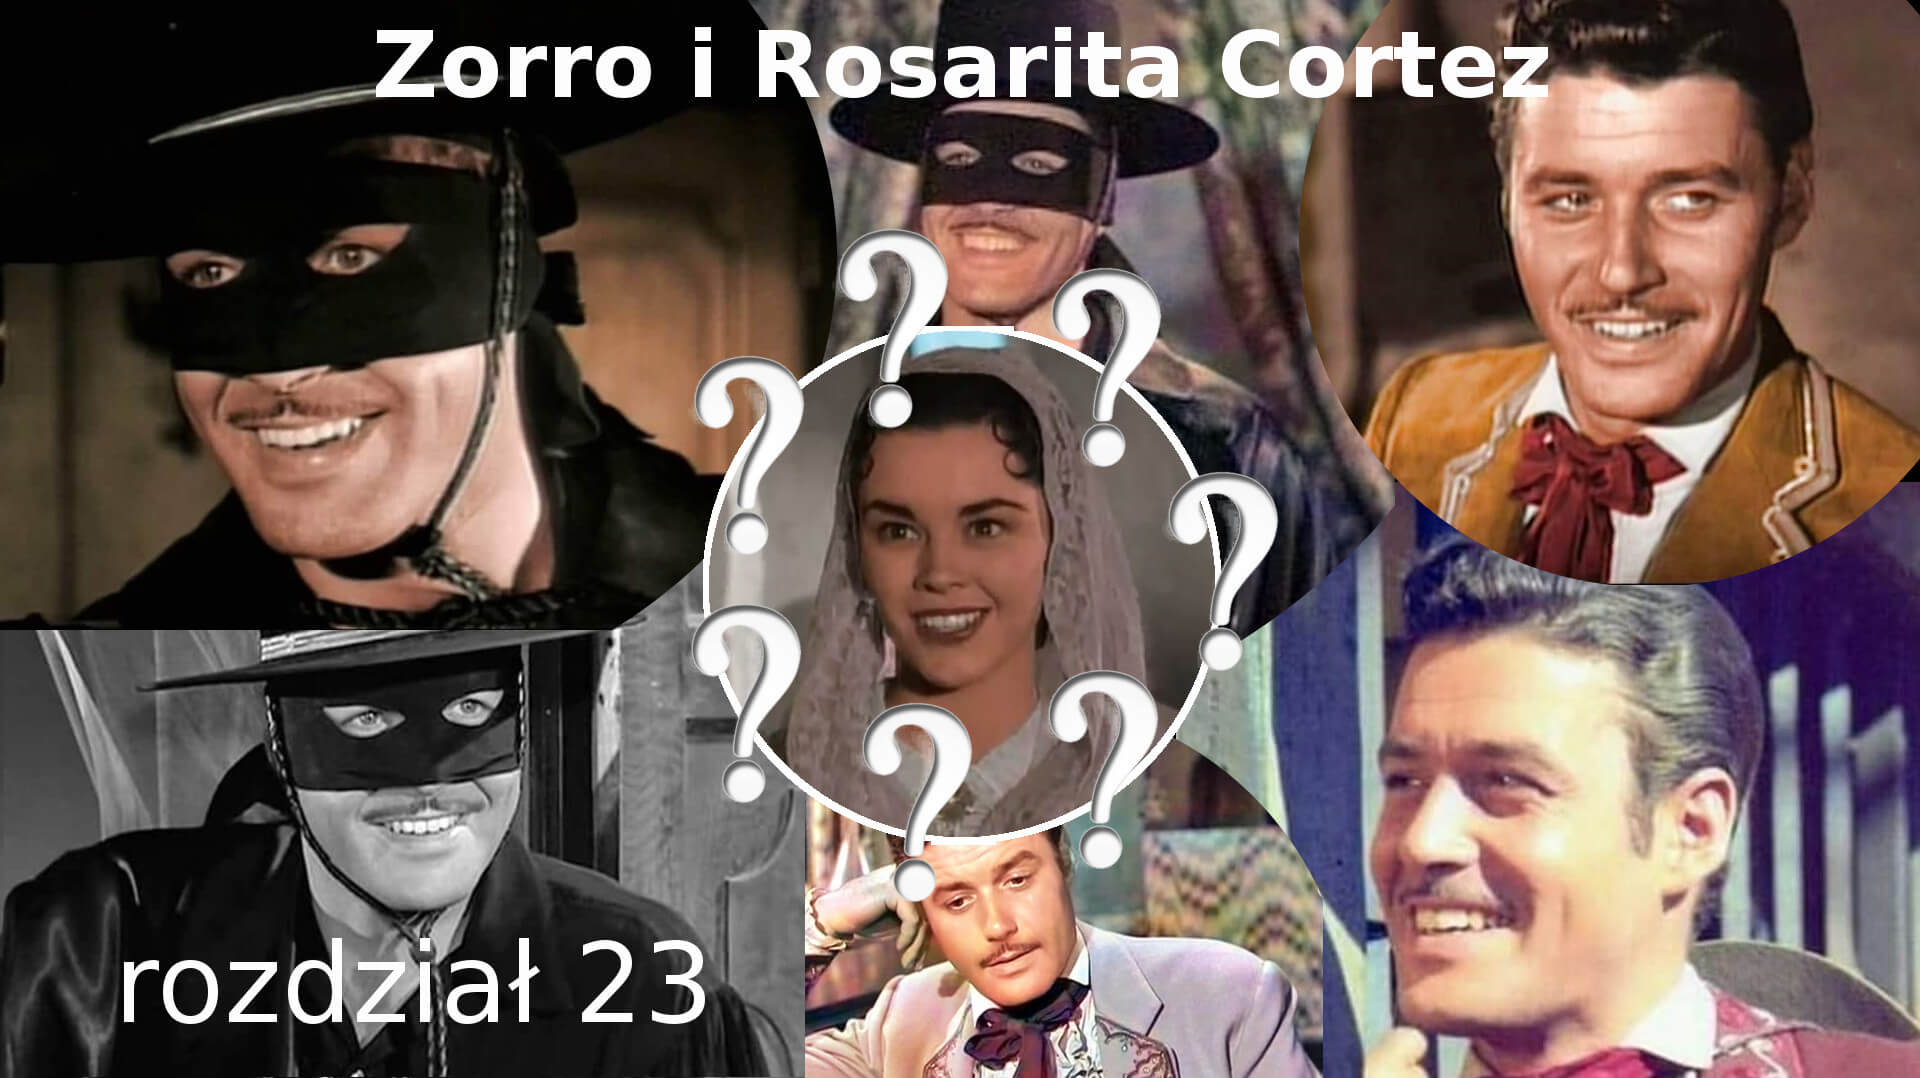 Zorro i Rosarita Cortez rozdział 23 Zorro fanfiction